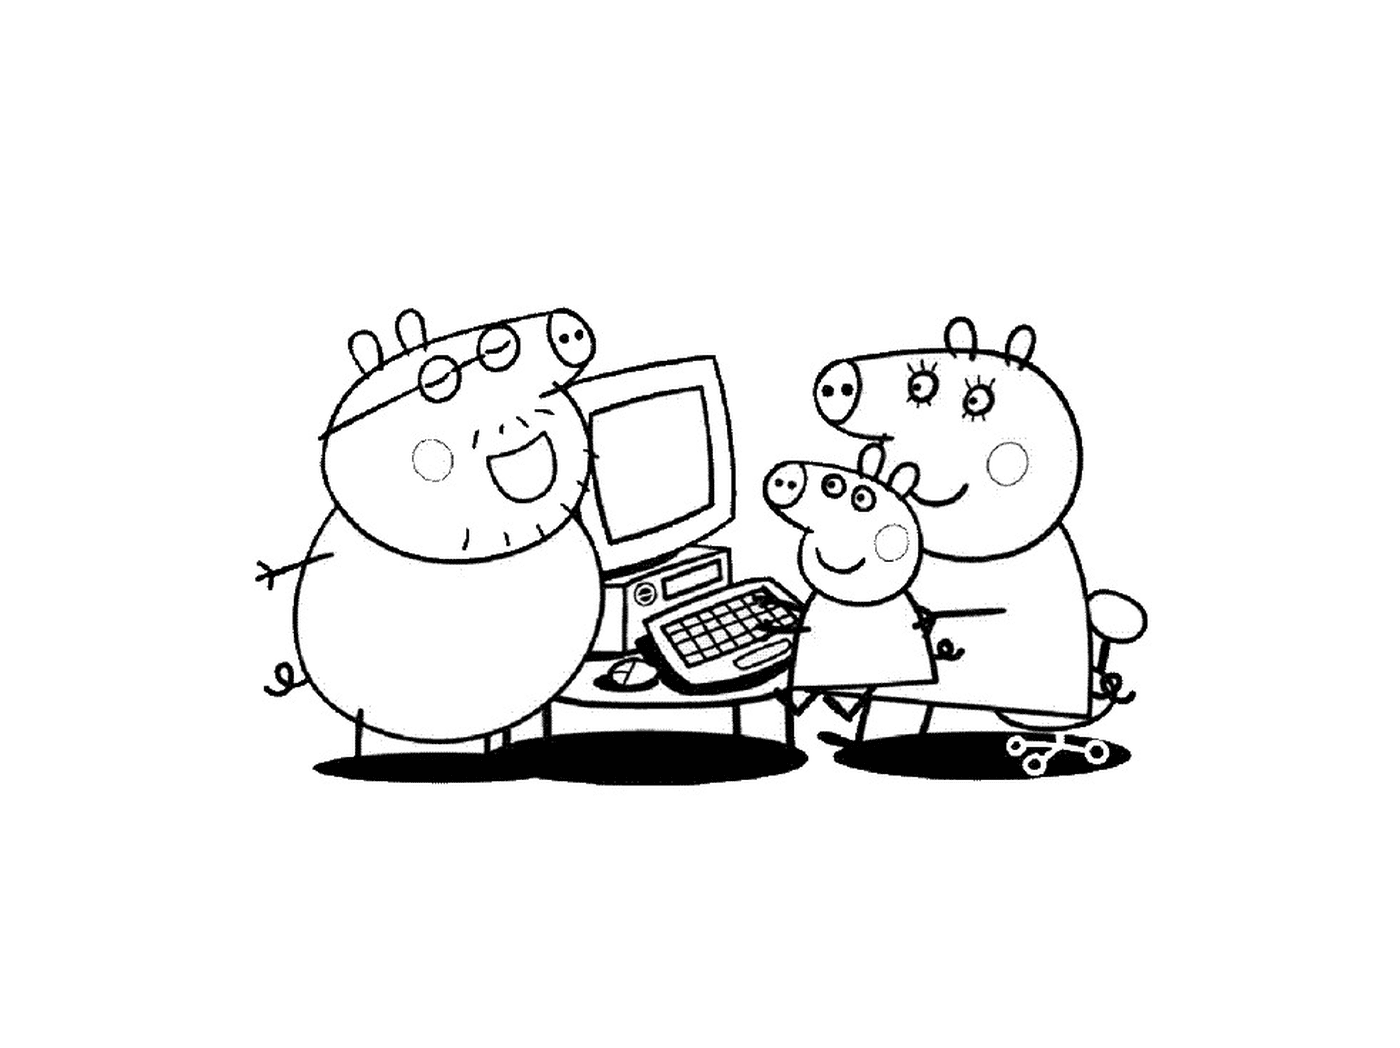  Группа персонажей Peppa Pig перед компьютером 